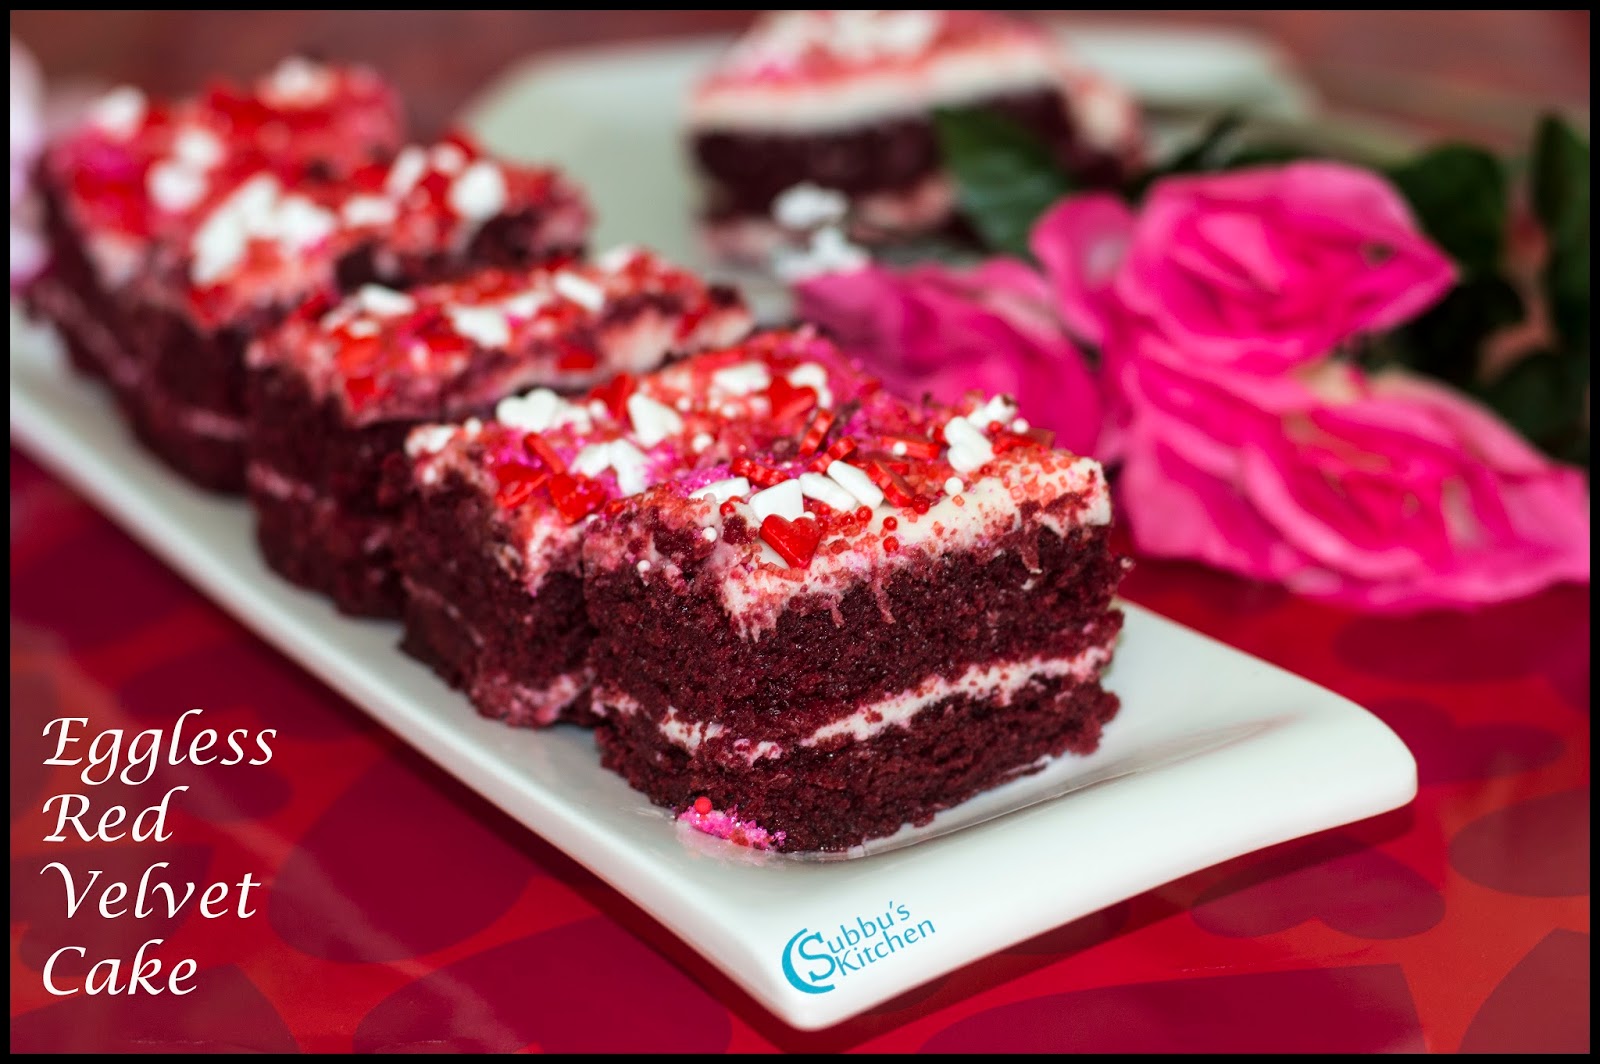 Eggless Red Velvet Recipe Velvet Cake with Beetroot Recipe - Subbus Kitchen